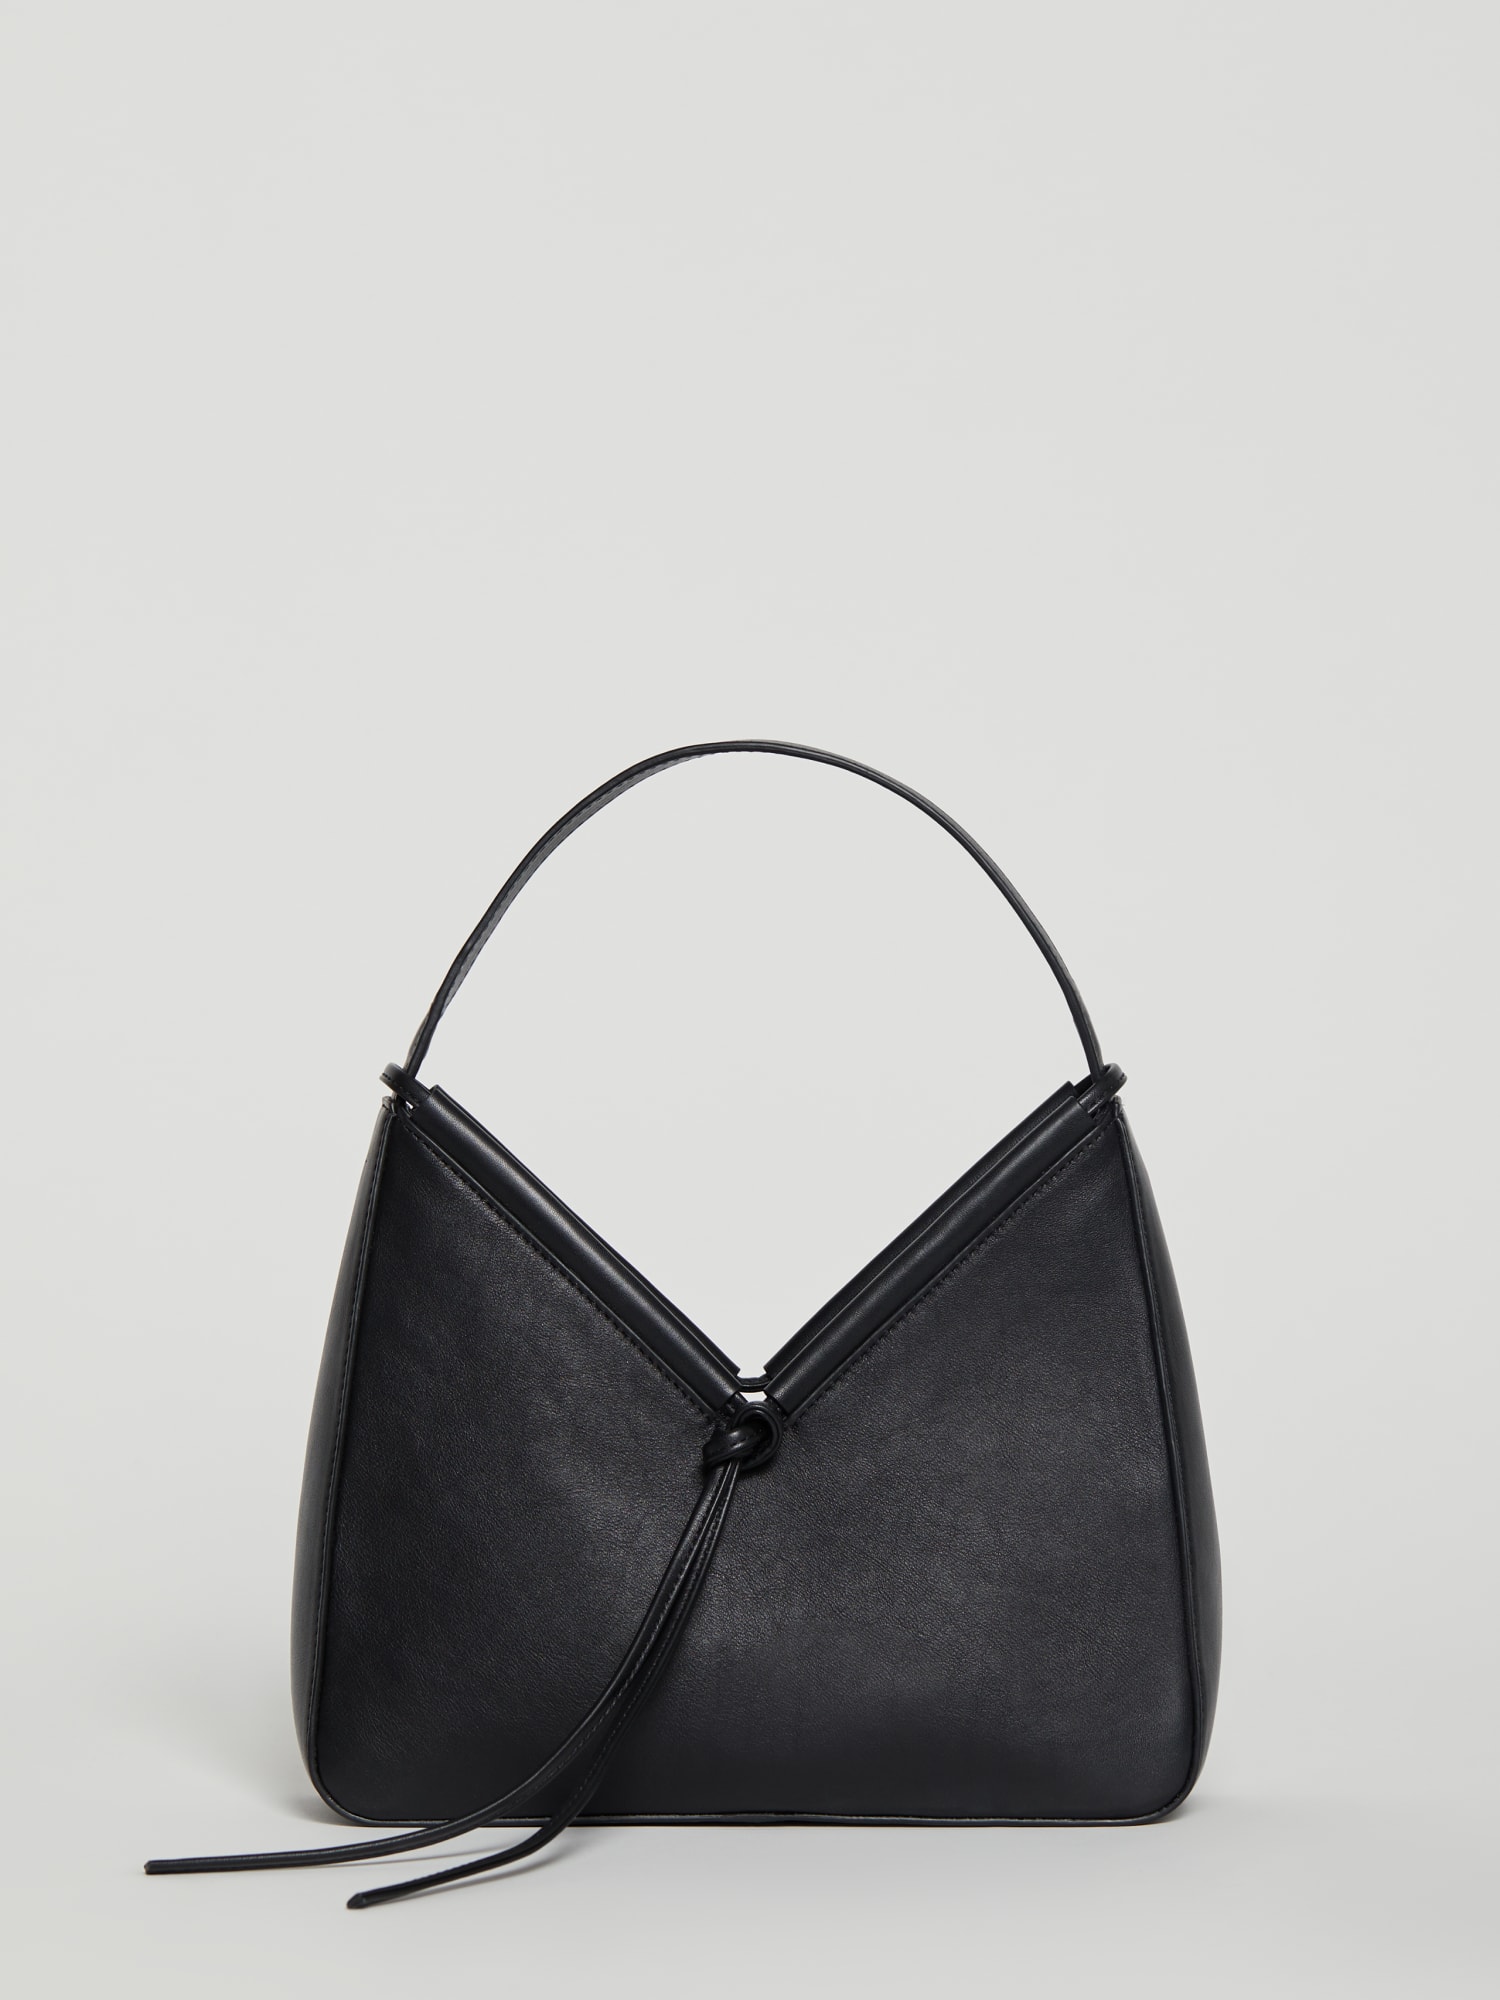 DEUX LUX Black Crinkle Large Bag Purse With Shoulder Strap N Wrist Handle